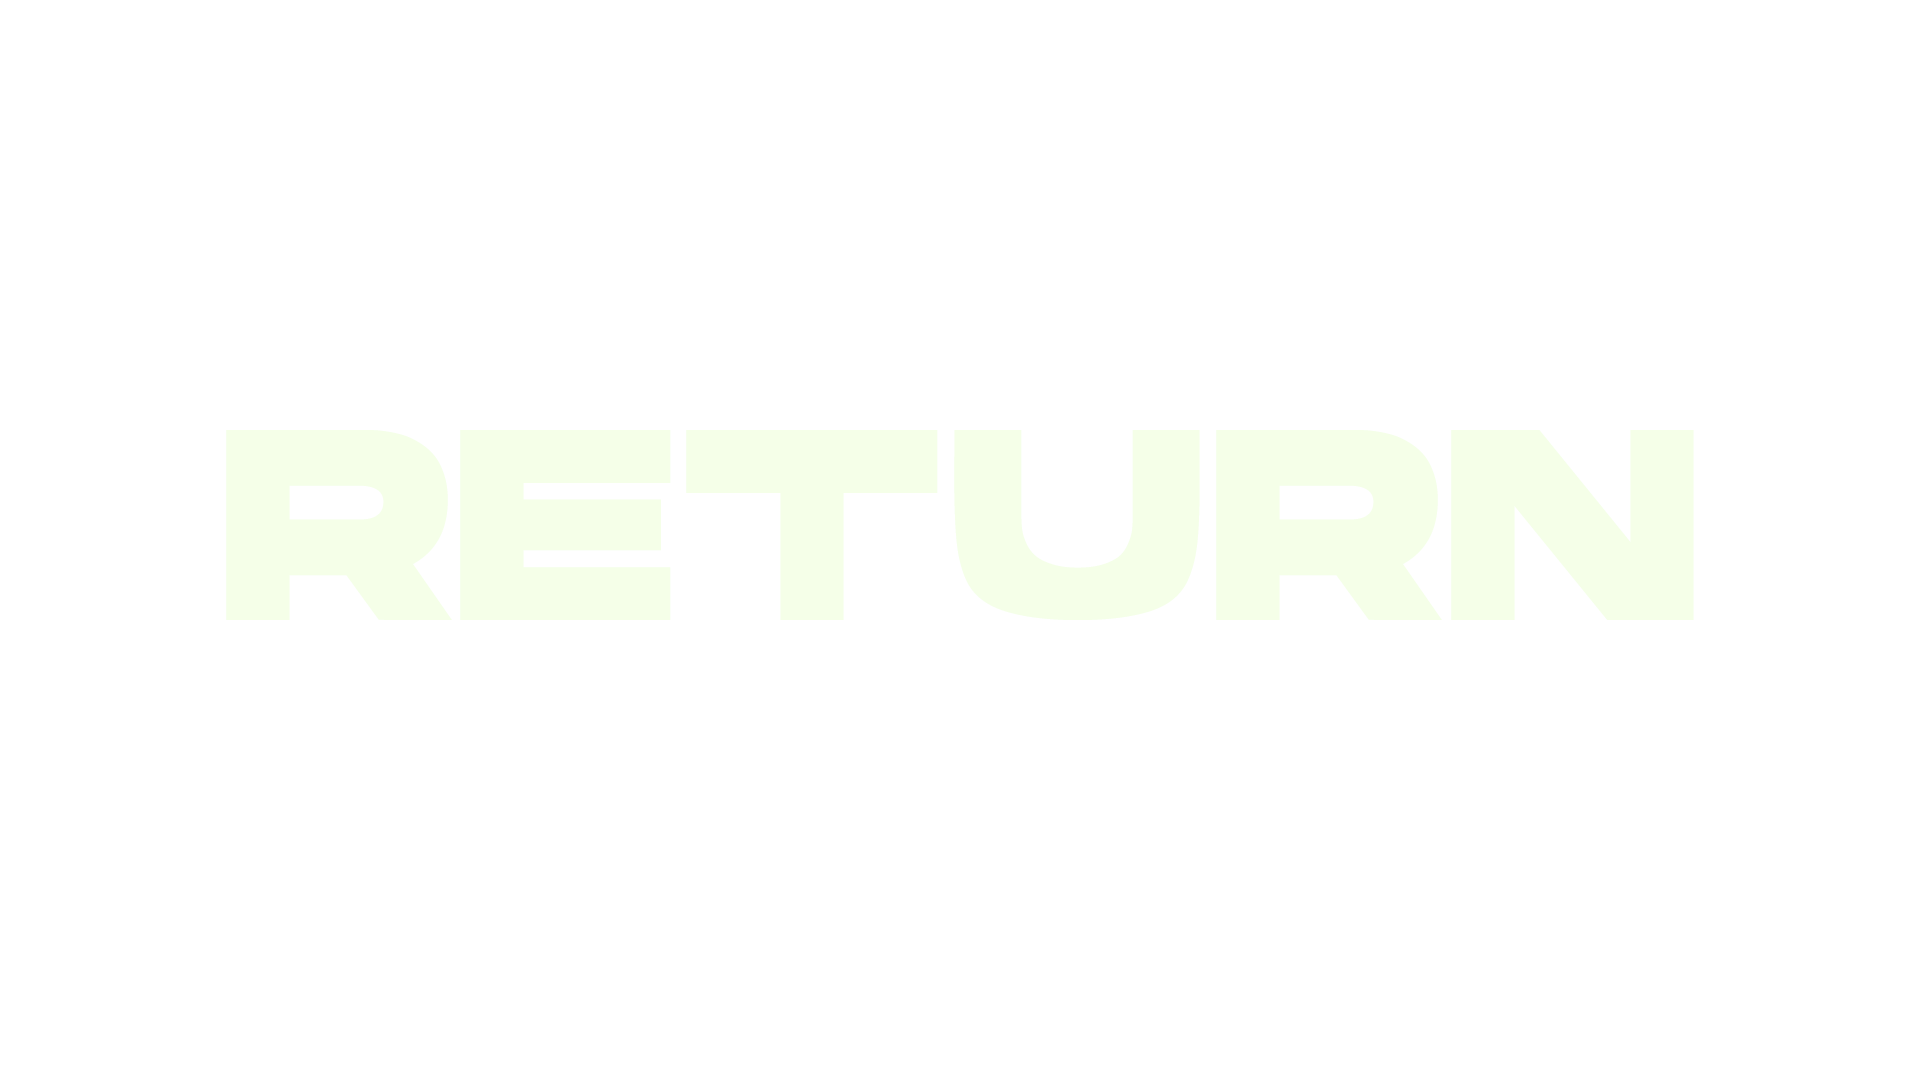 Return logo